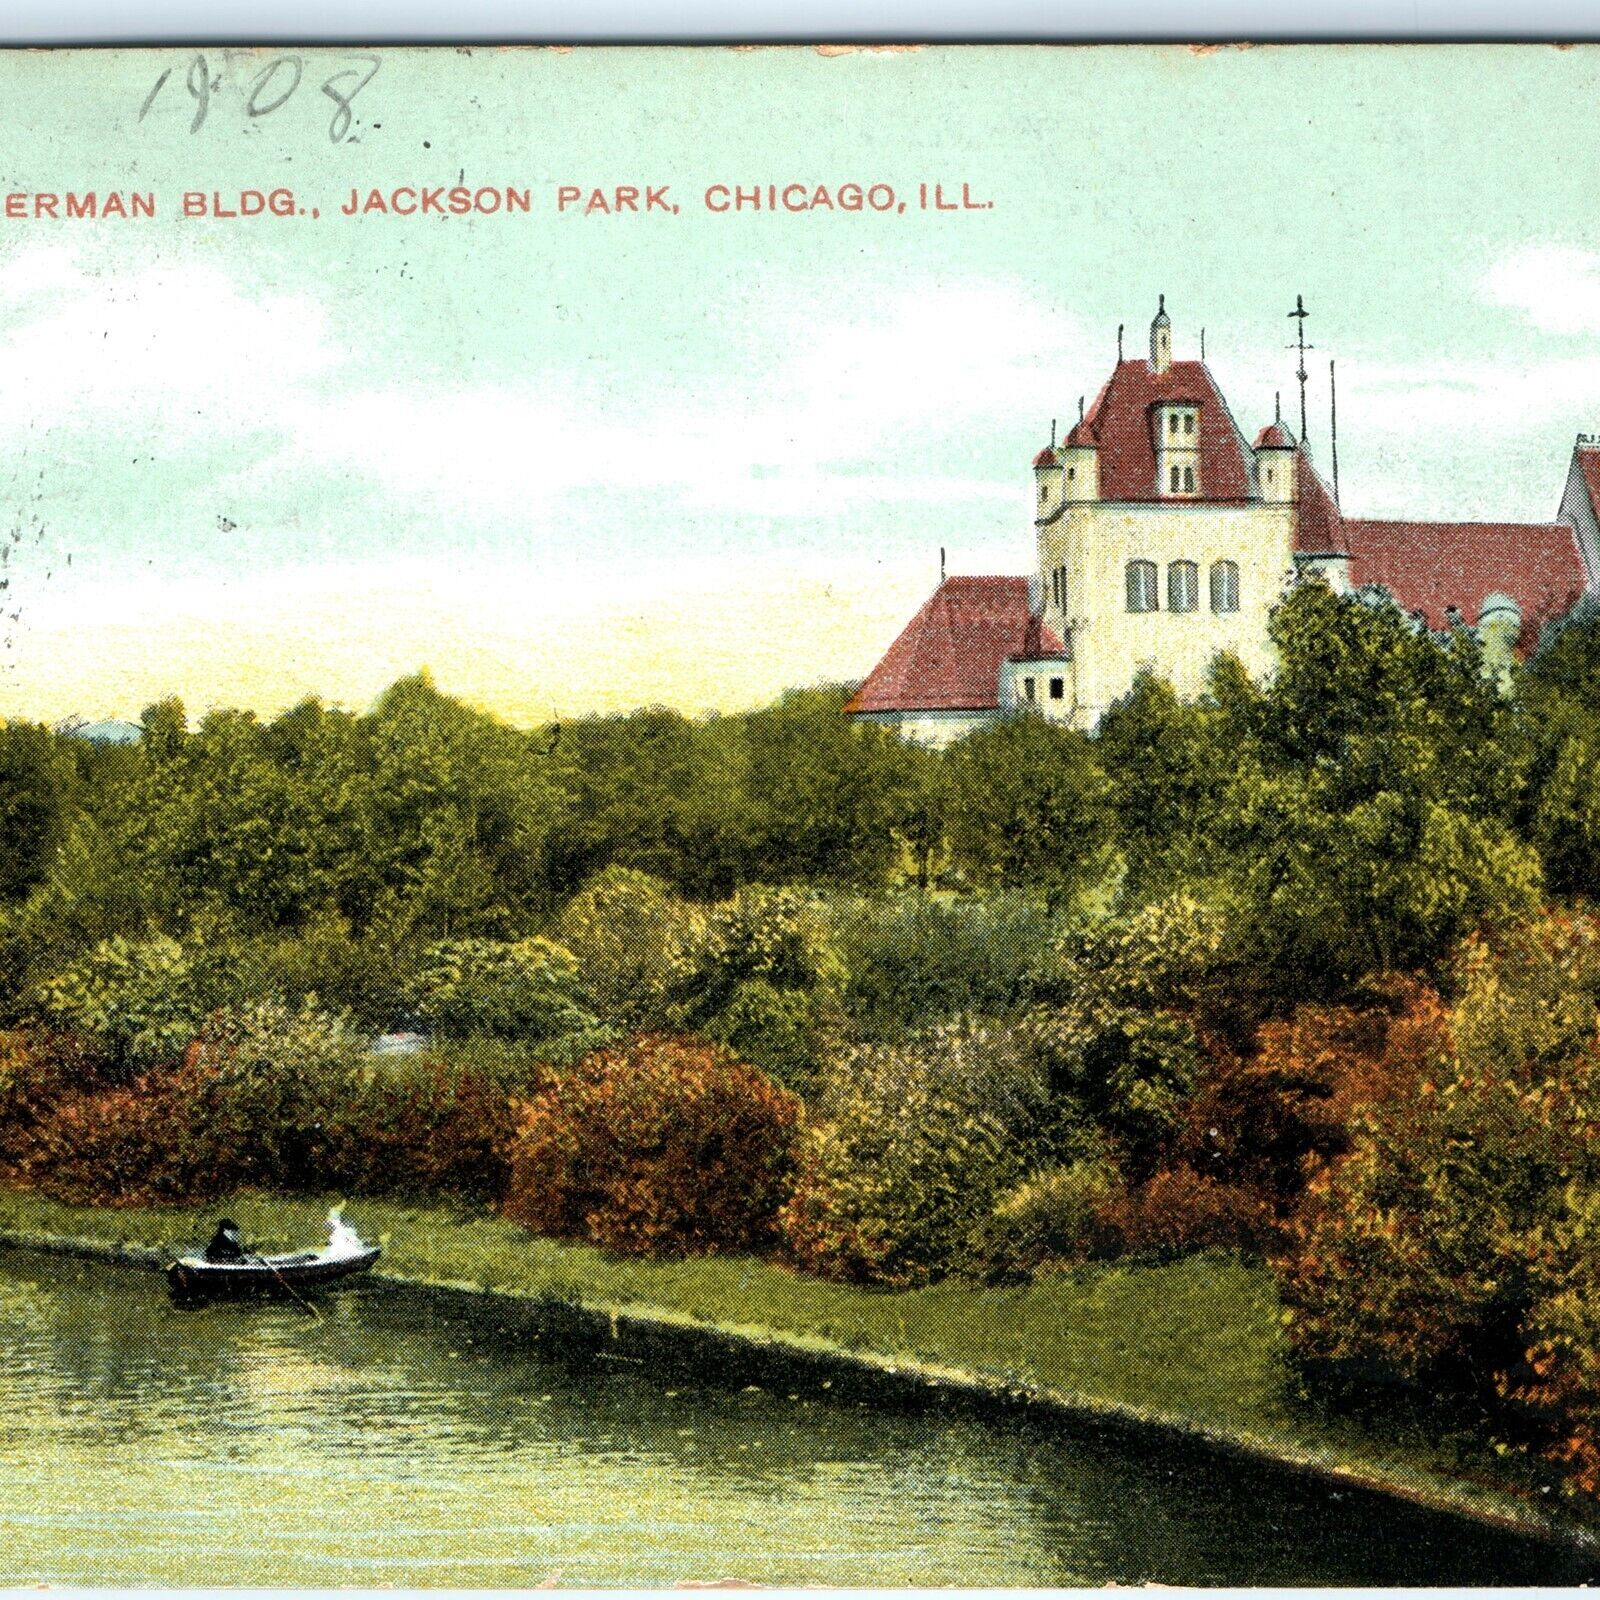 c1900s Chicago, IL German Bldg Jackson Park Antiquitech Tower Boat Postcard A119